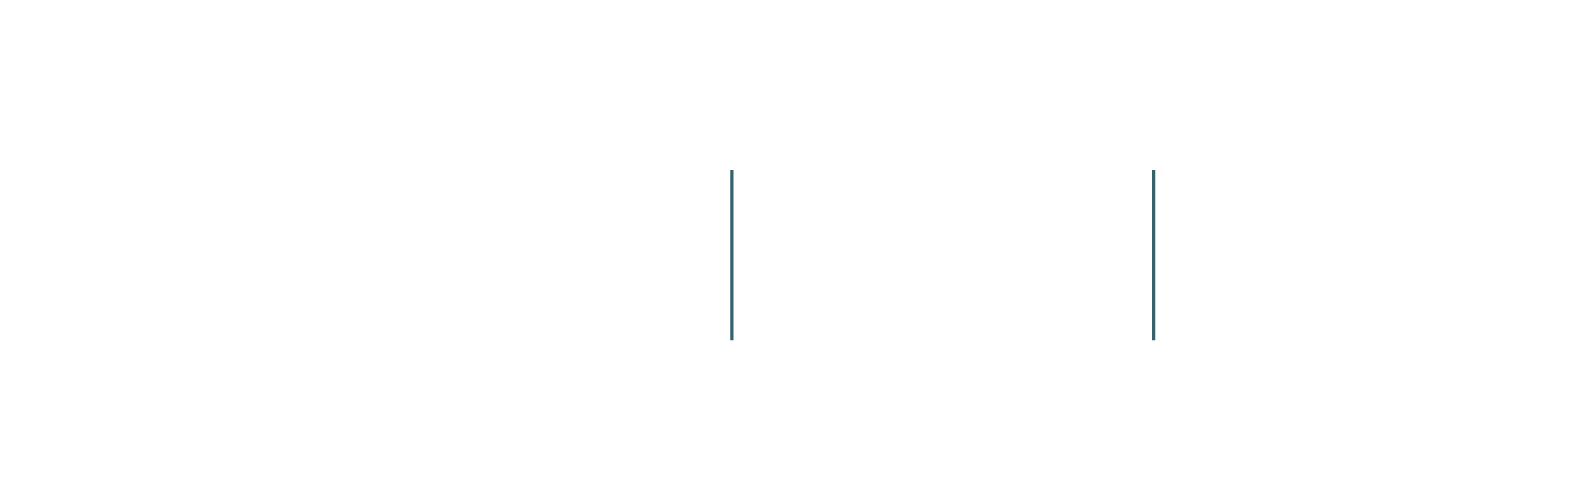 ESA Business Incubation Centre Czech Republic - SPACERACE